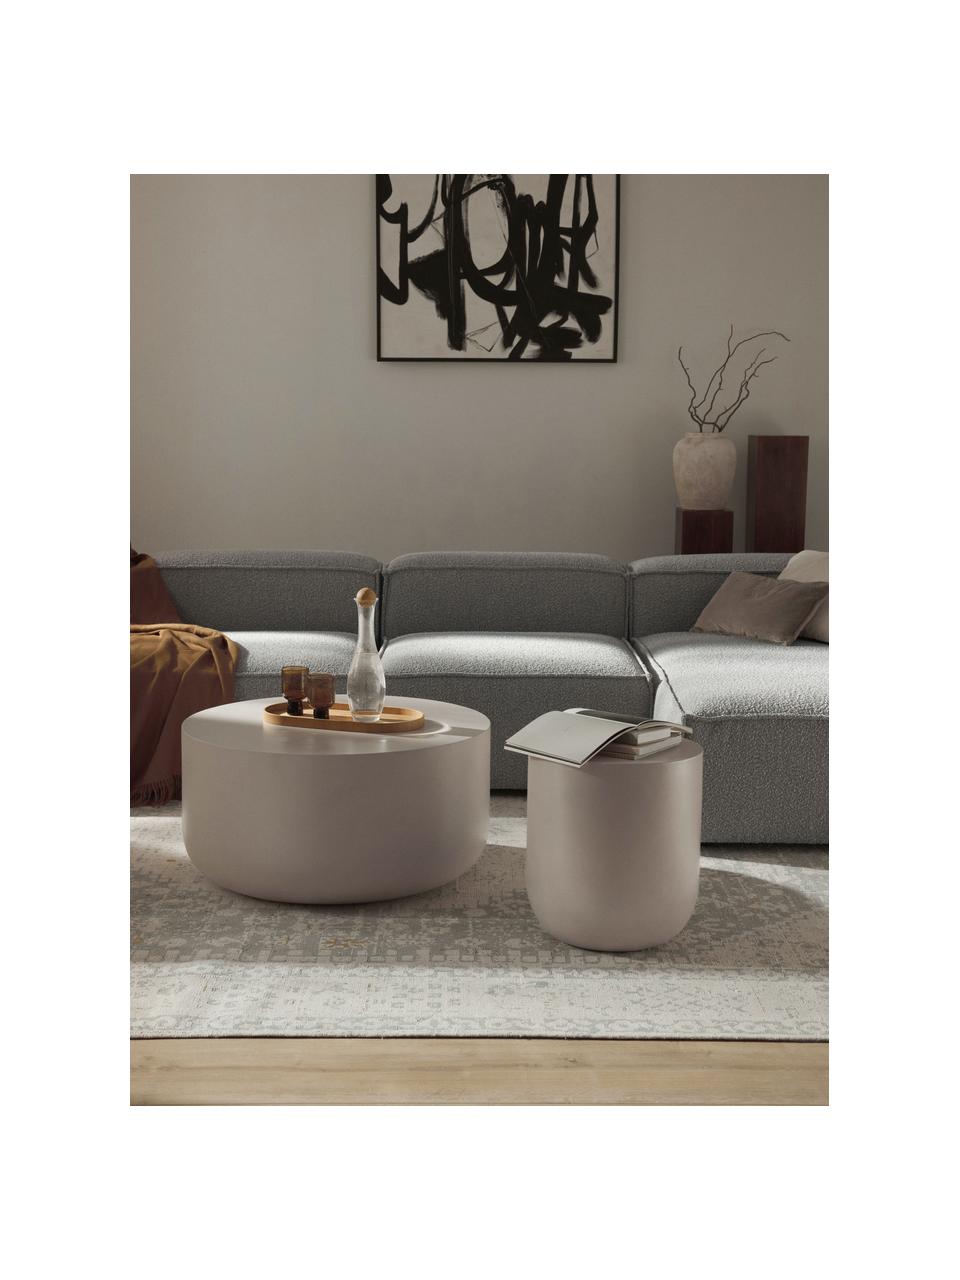 Tavolino rotondo da interno-esterno Rona, Cemento con fibra di vetro, Beige chiaro, Ø 40 cm